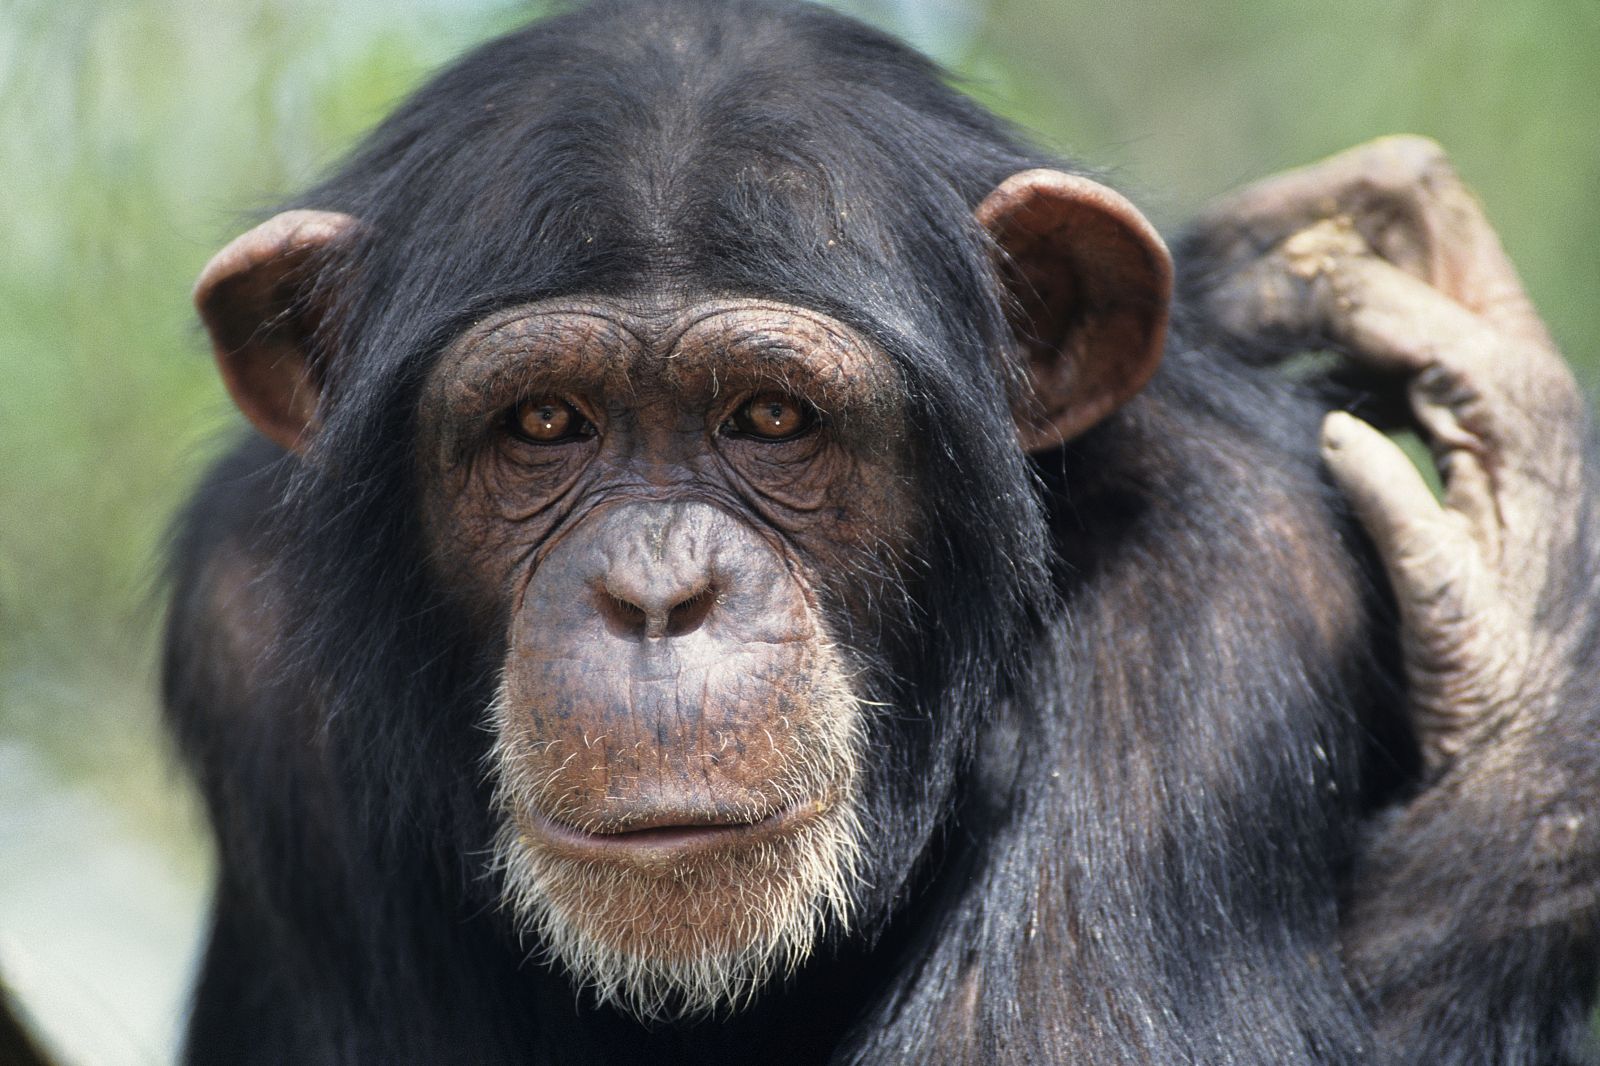 El cautiverio provoca problemas mentales en los chimpancés